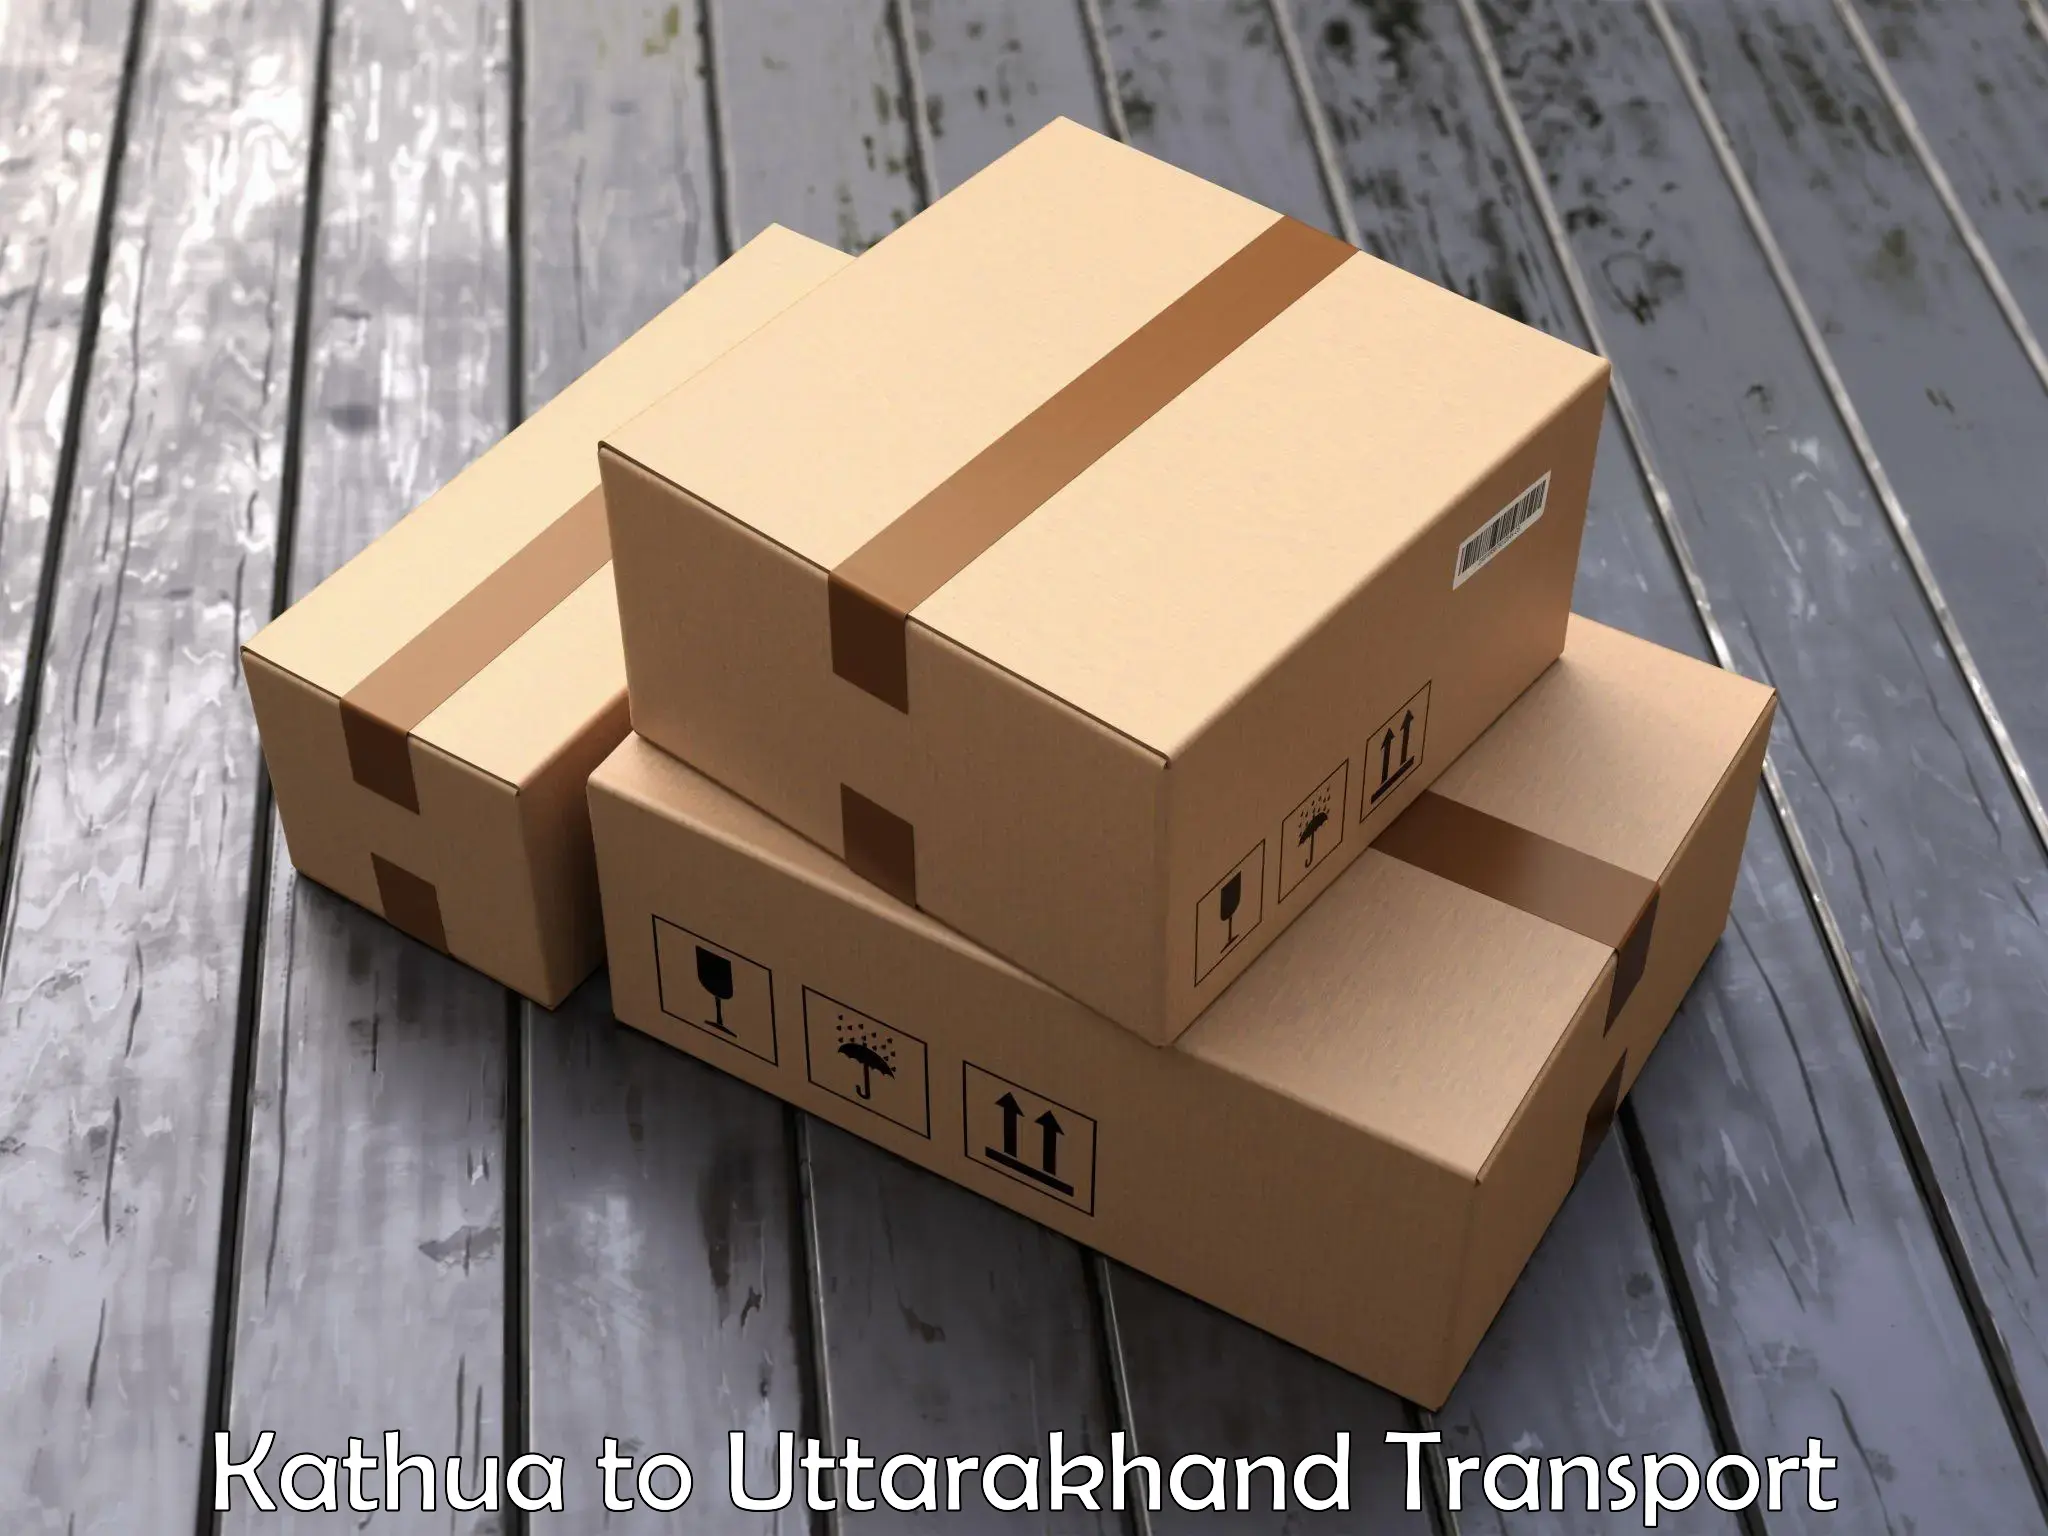 Two wheeler parcel service Kathua to Joshimath